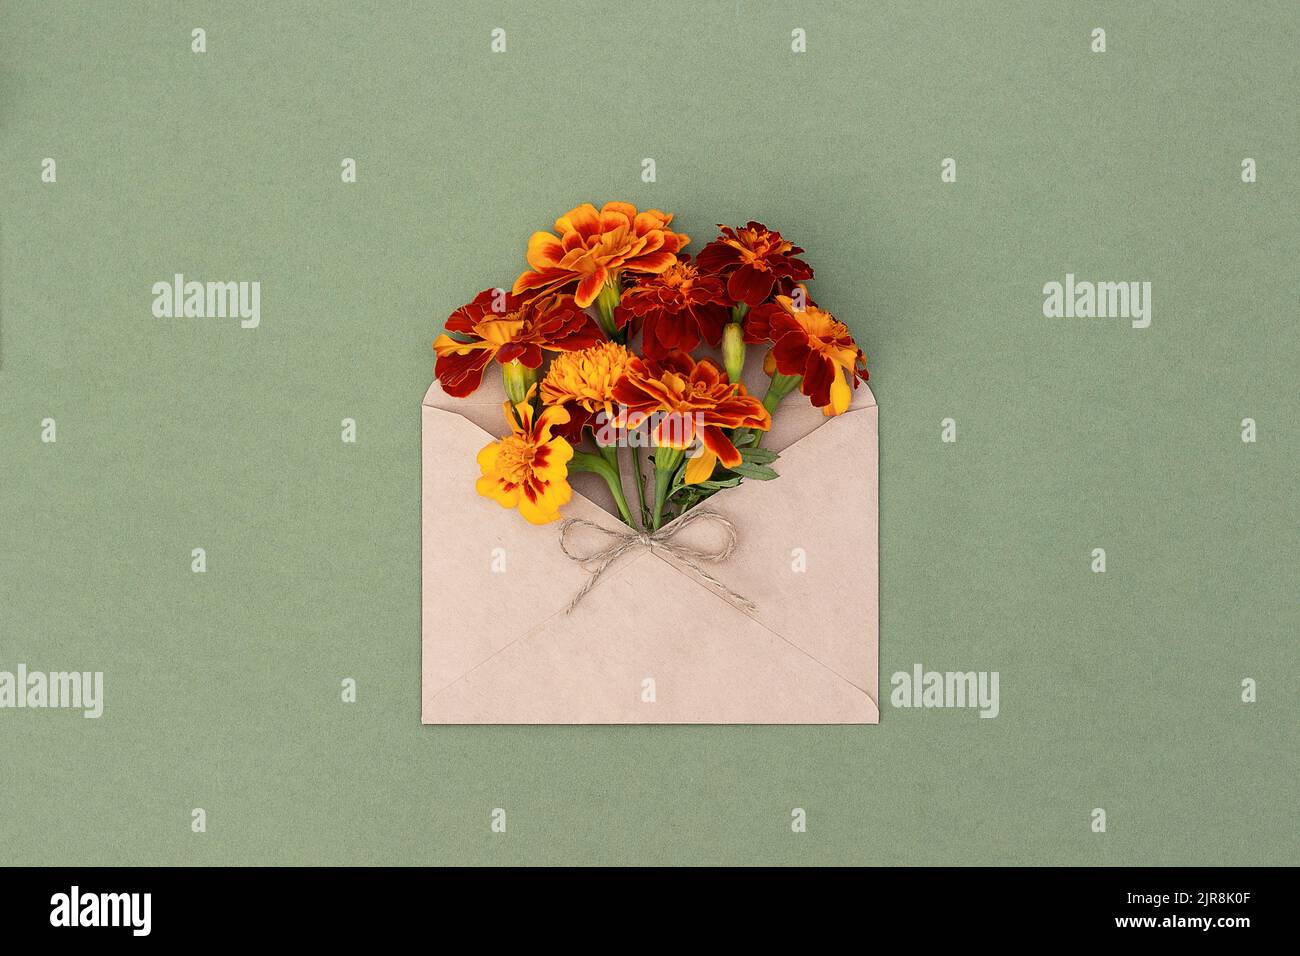 Fleurs orange dans une enveloppe artisanale sur fond vert. Vue de dessus Flat lay. Carte de vœux minimale pour l'été ou l'automne. Banque D'Images